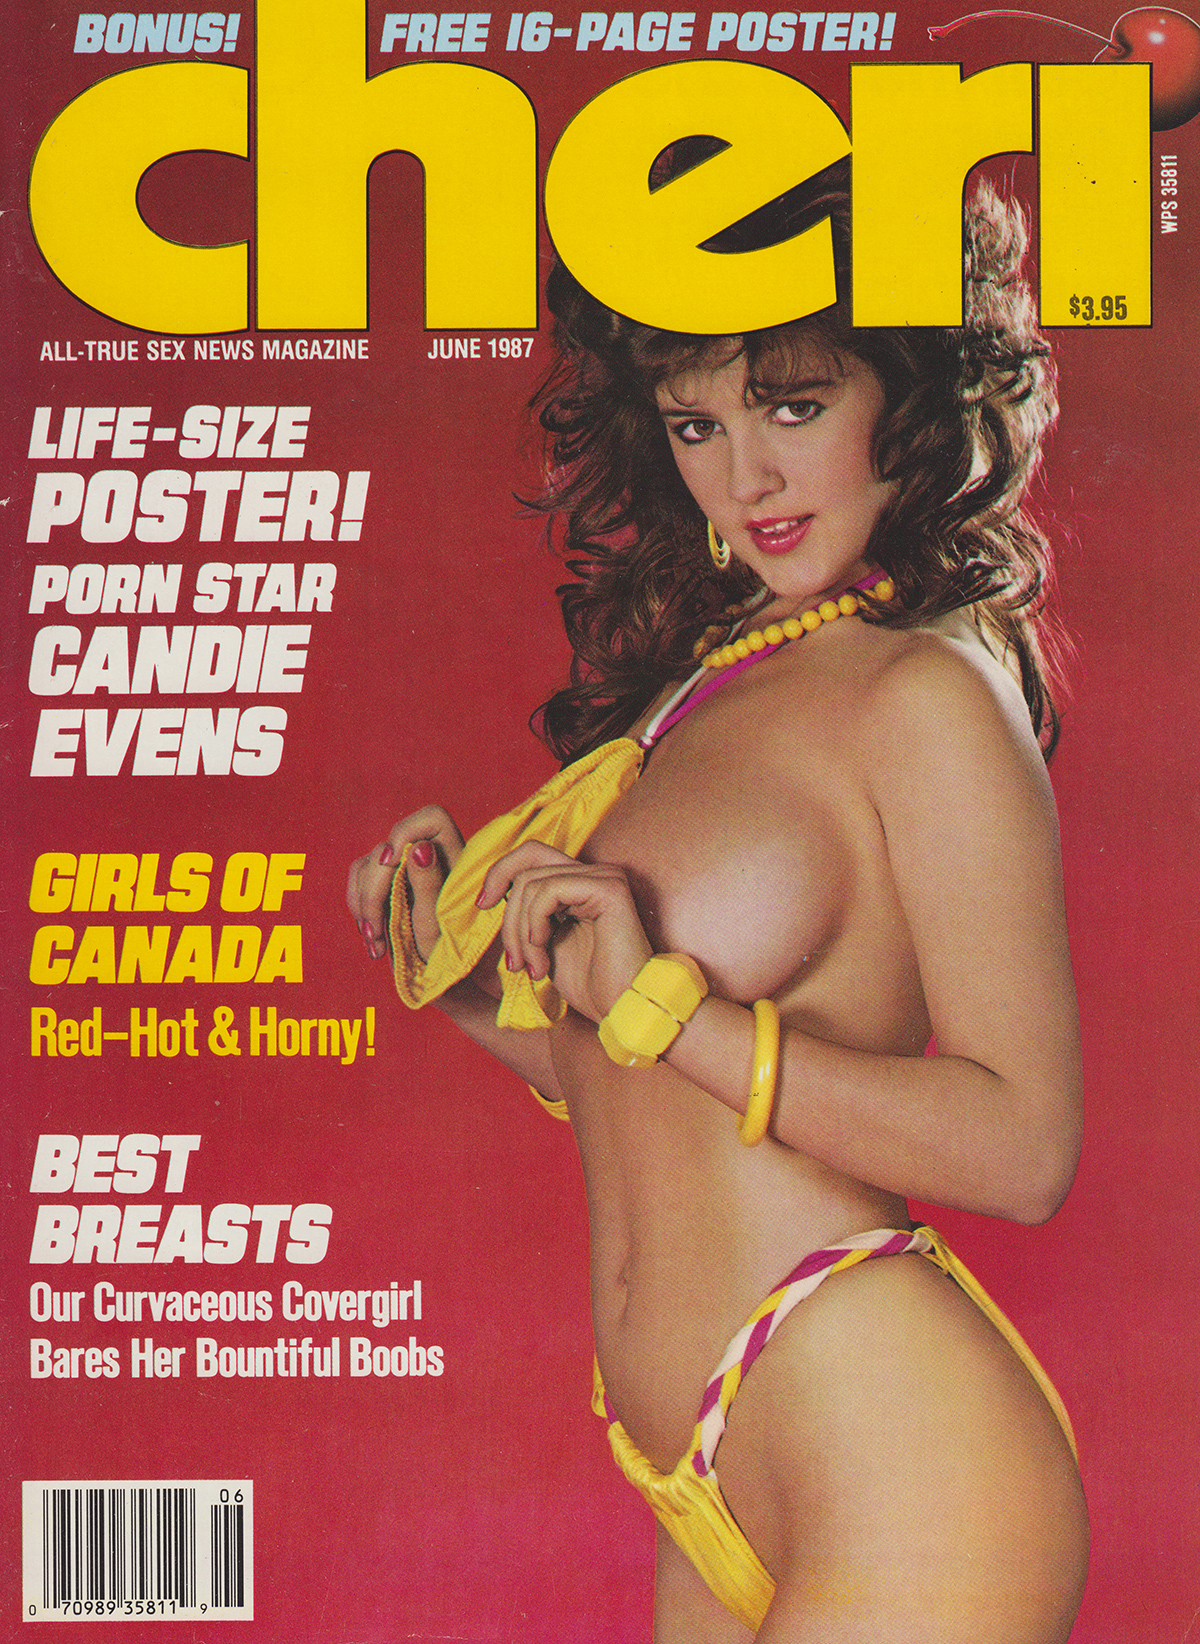 Cheri June 1987 magazine back issue Cheri magizine back copy Cheri June 1987 Adult Vintage Magazine Back Issue Published by Cheri Publishing Group. Covergirl Madeline.